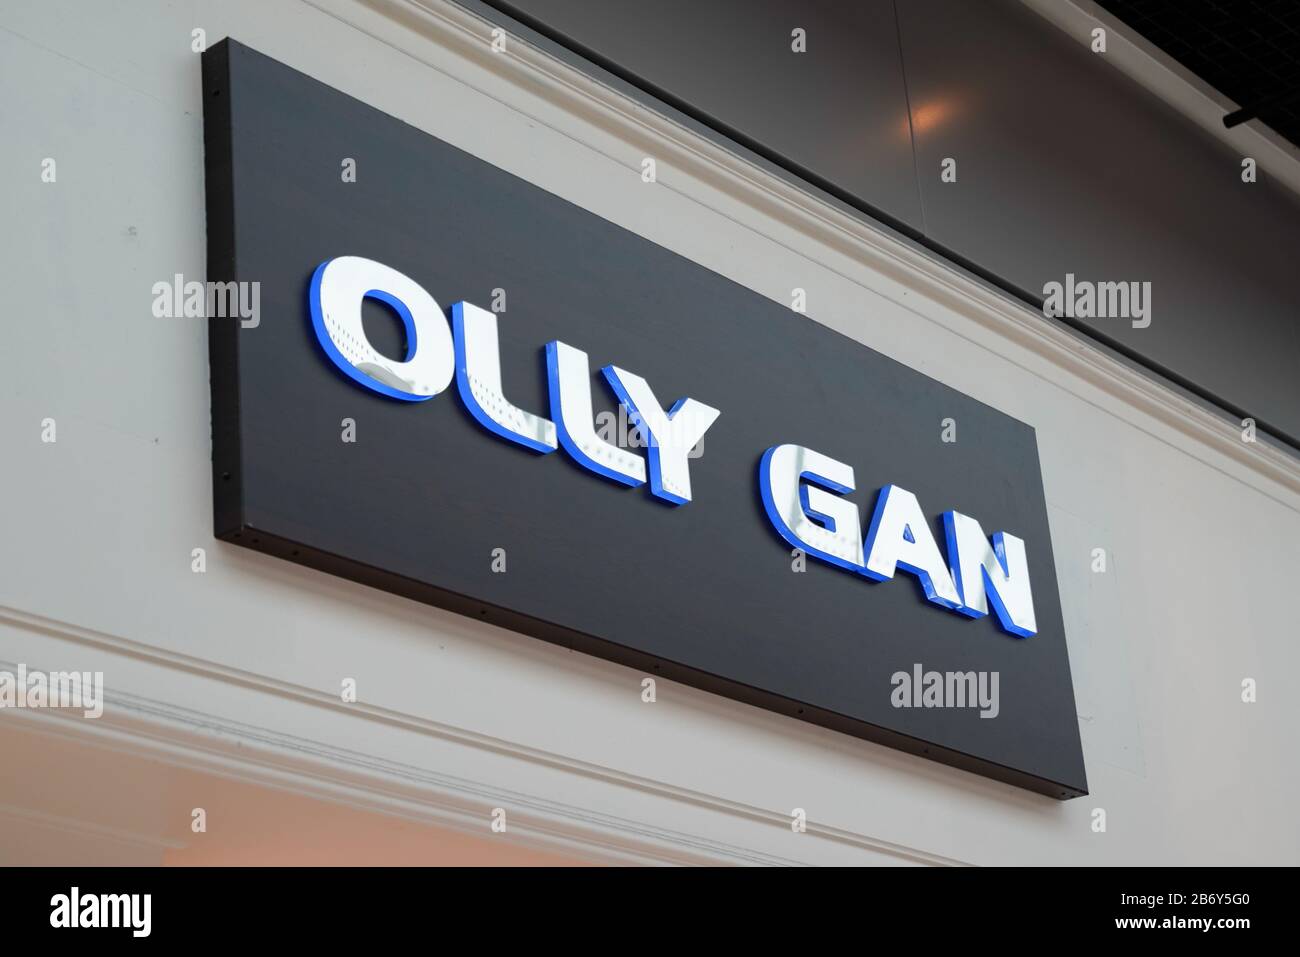 Olly gan Banque de photographies et d'images à haute résolution - Alamy